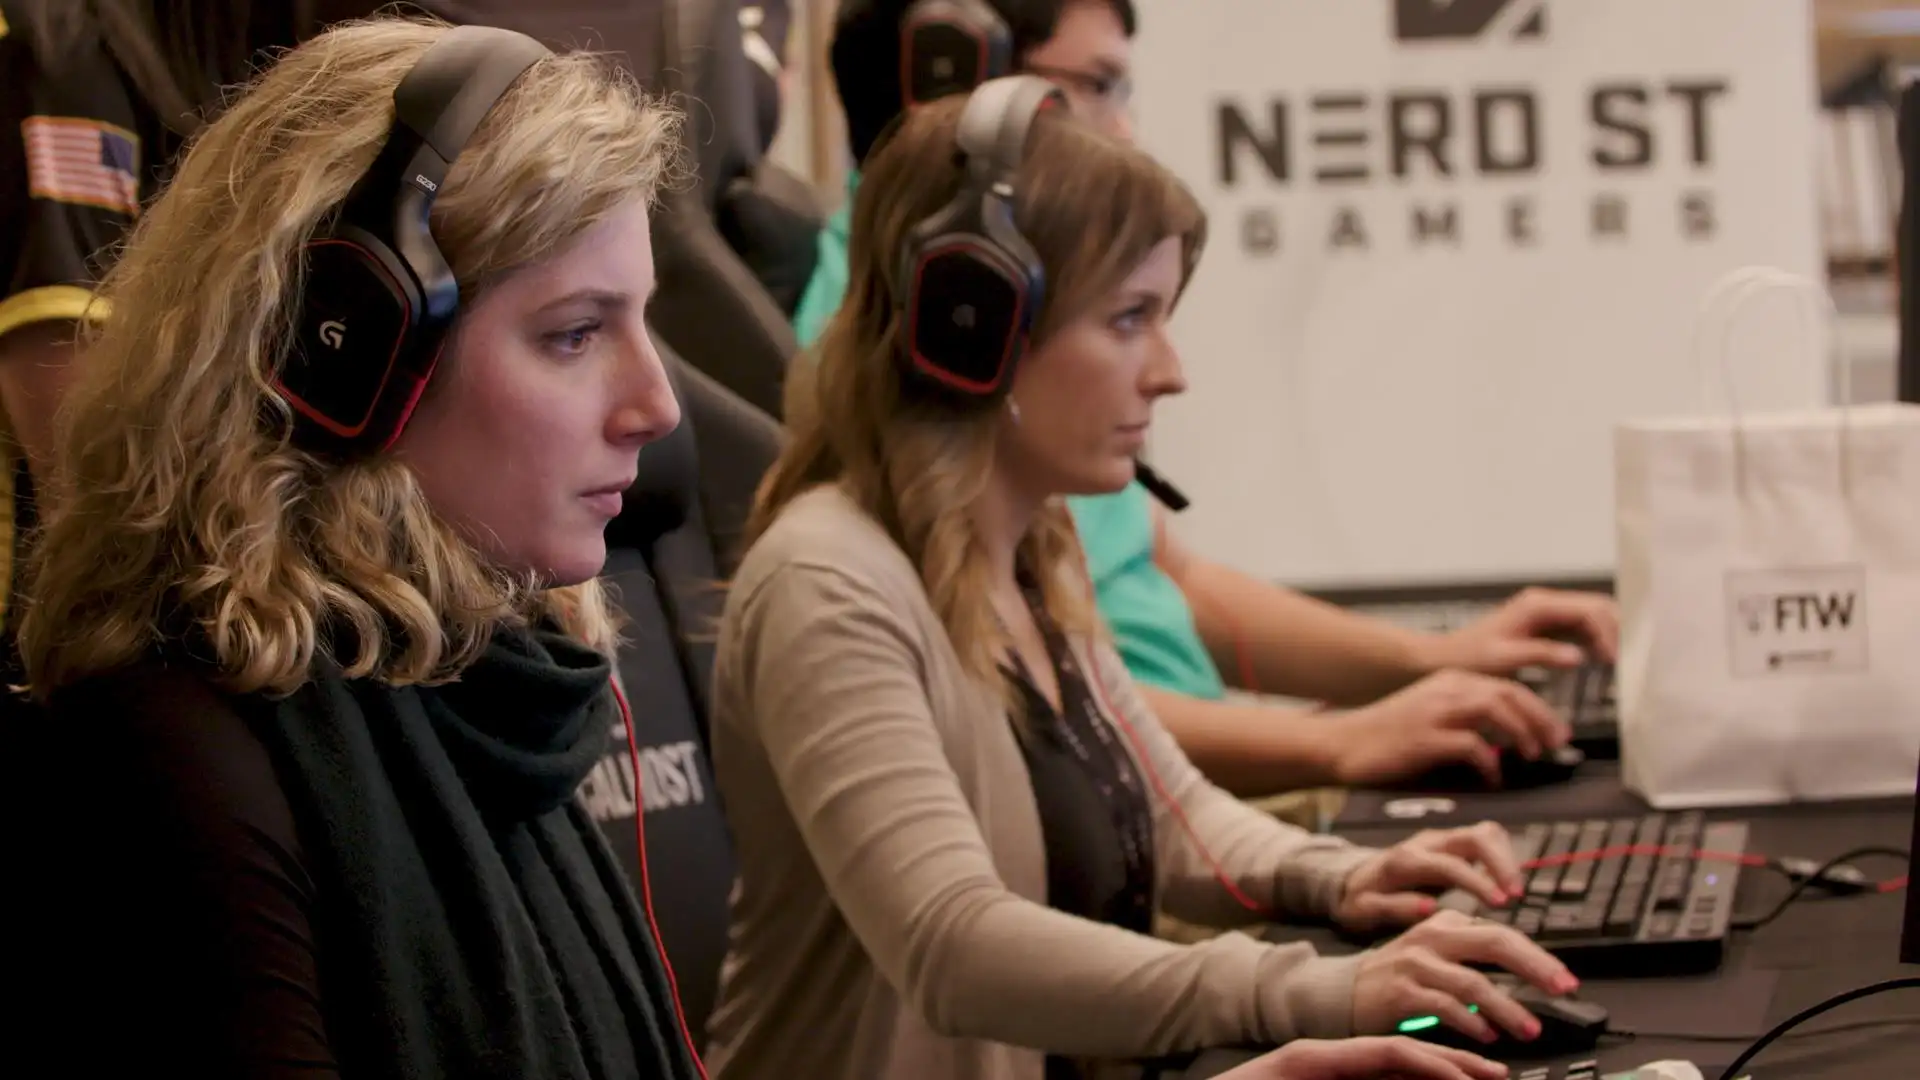 Pubblico femminile dei videogiochi in crescita, più donne soprattutto su Switch, aumentano le videogiocatrici - i risultati della ricerca